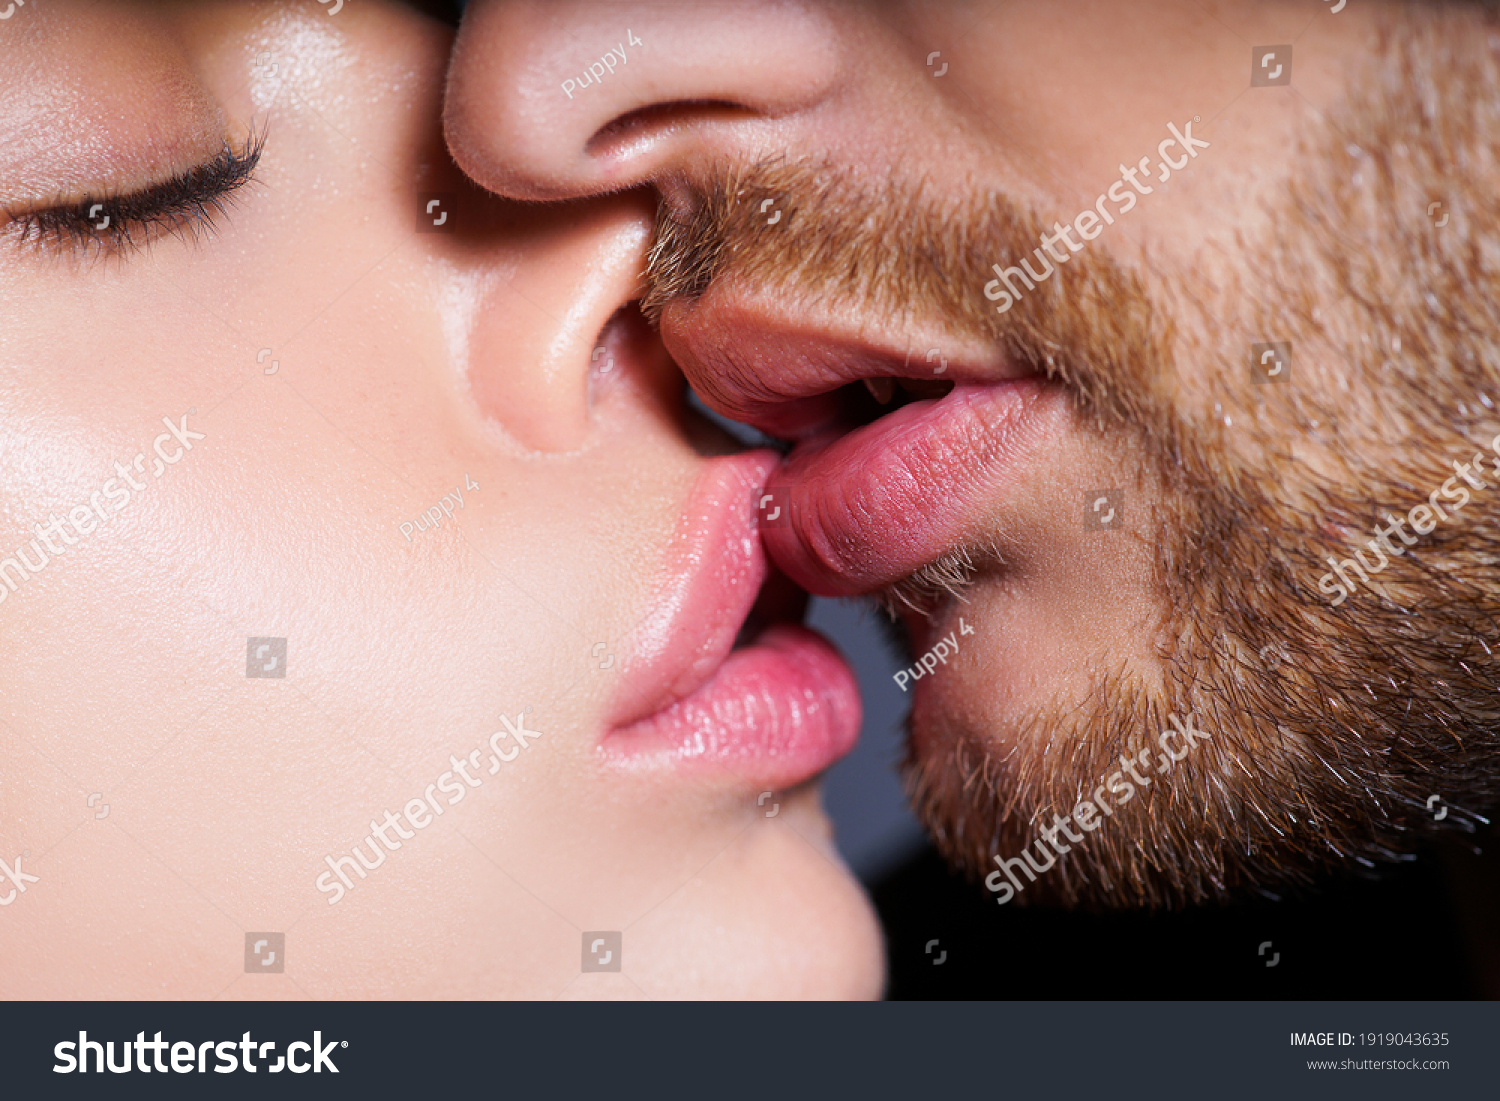 Виды и техника поцелуев фото поцелуев